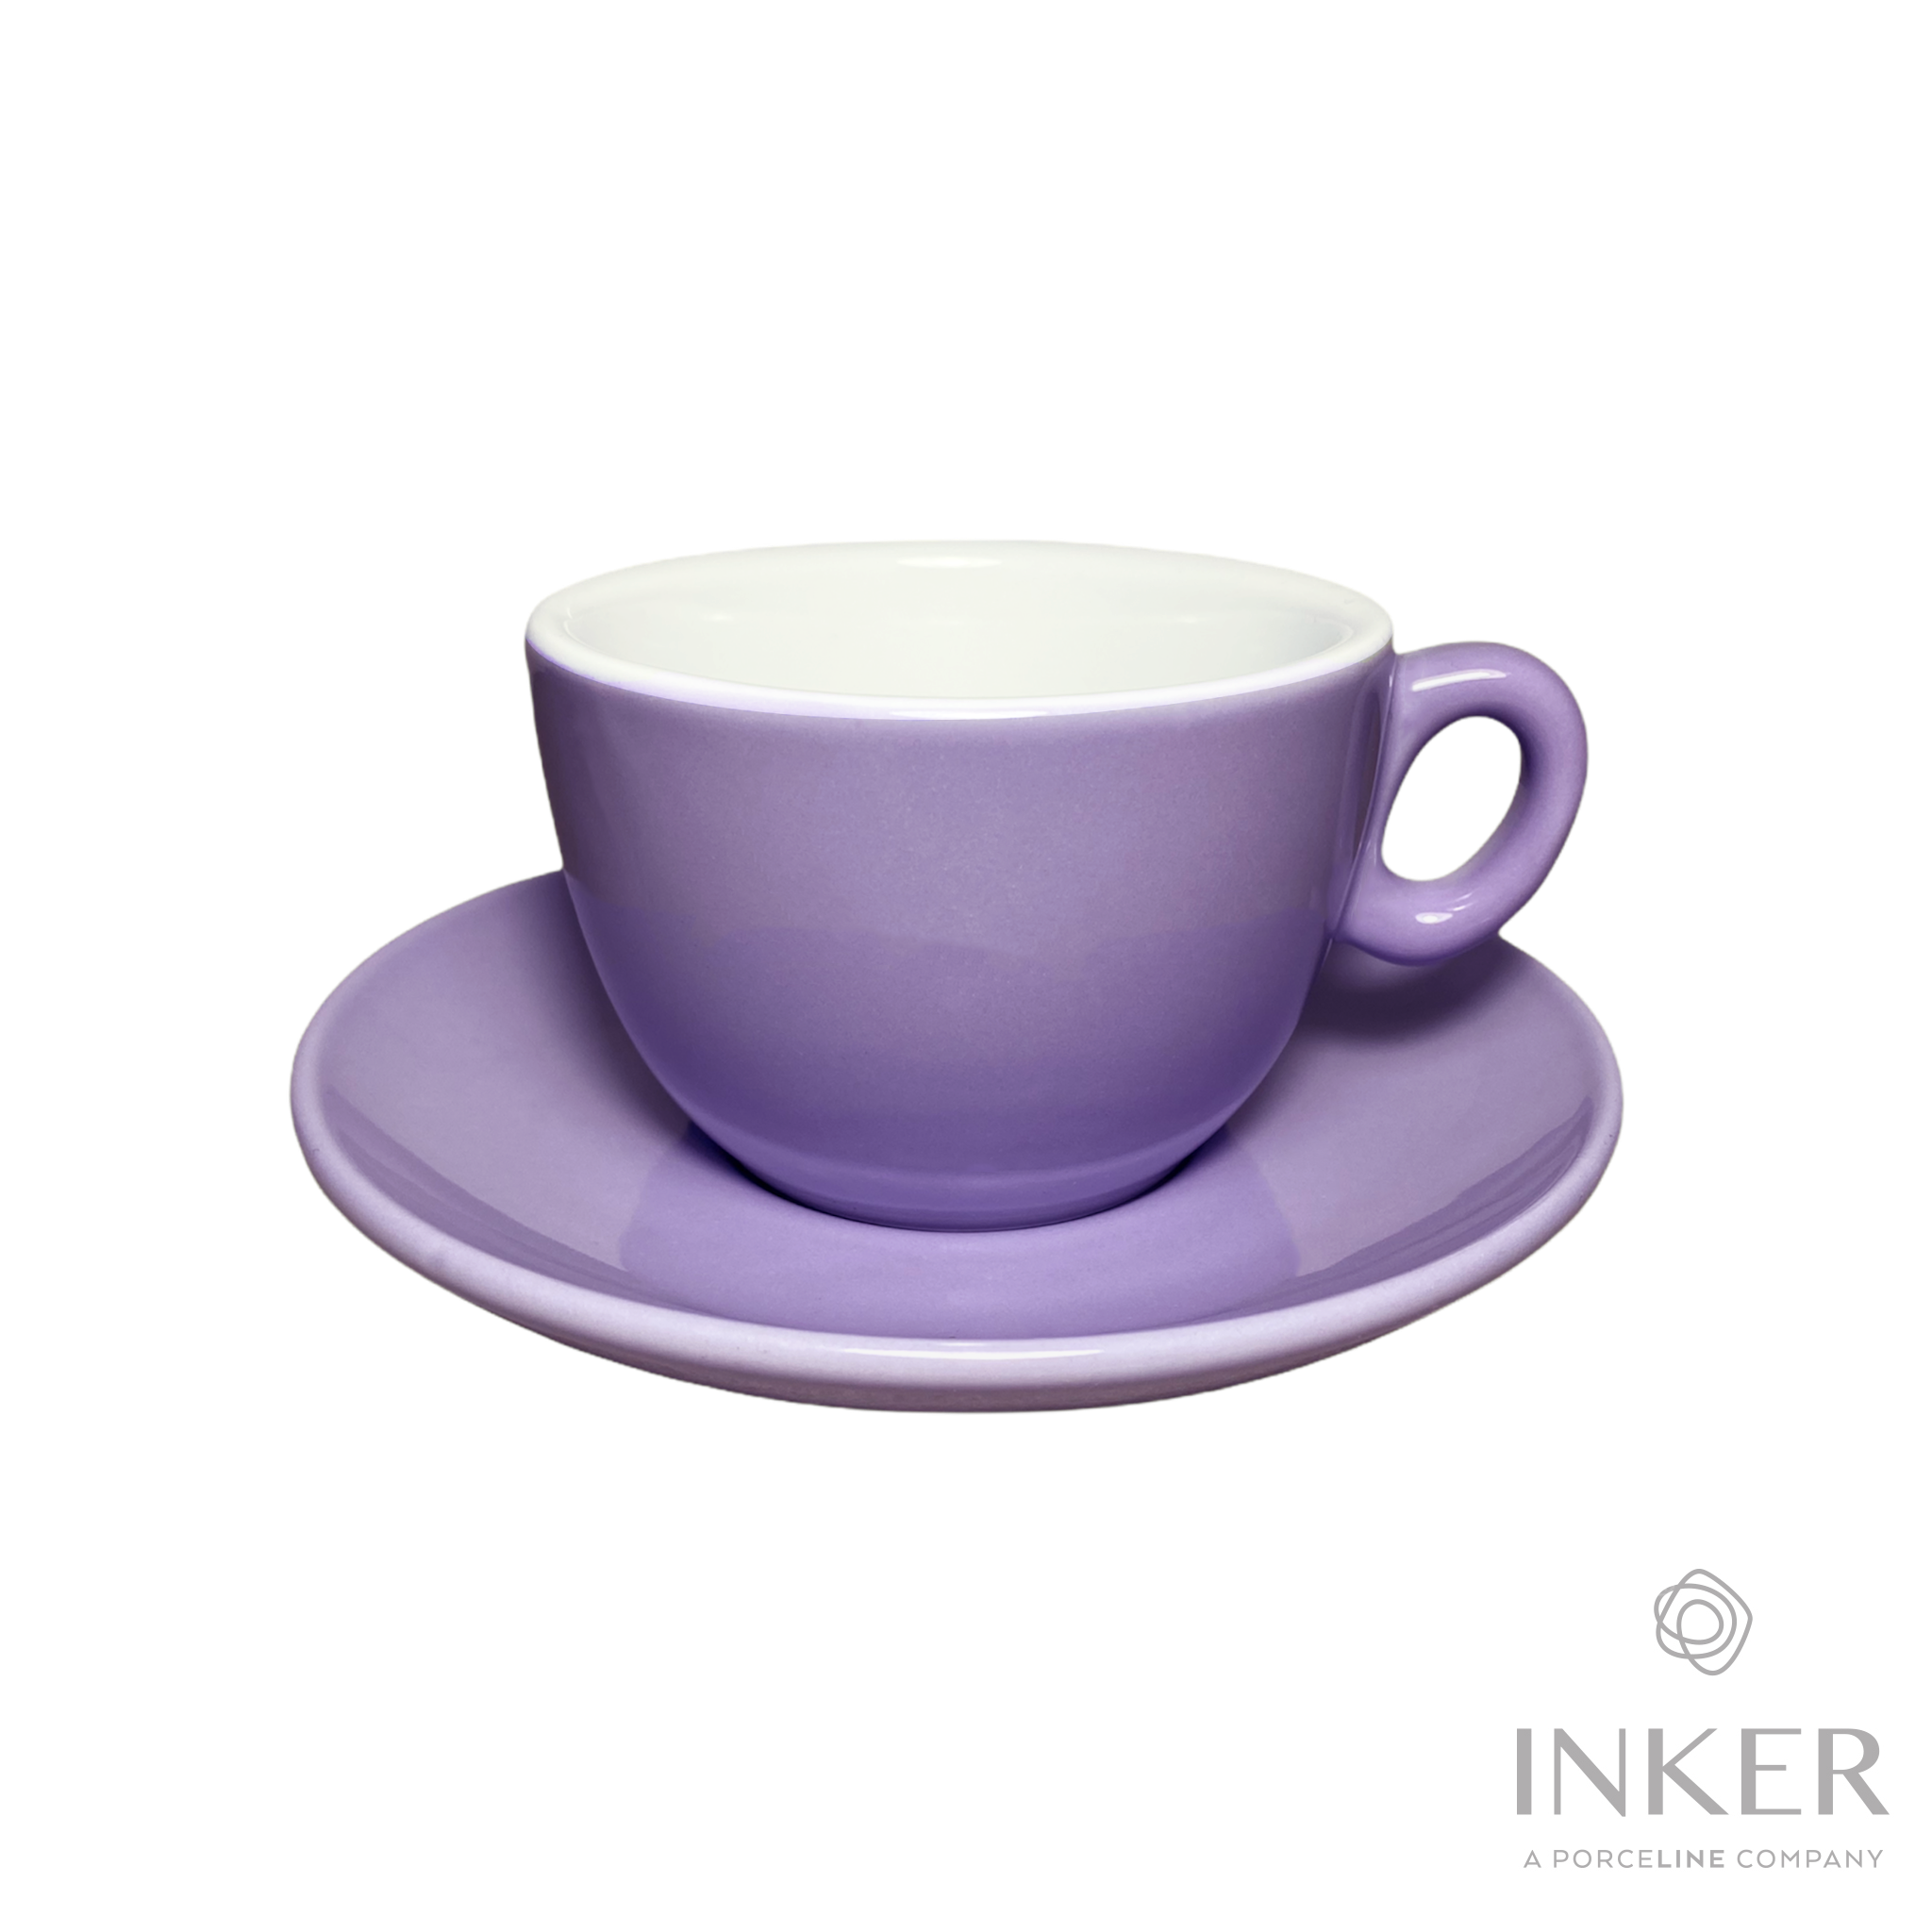 Tazzine Servizio da 6 Pezzi Caffe' Colorate purple in Porcellana